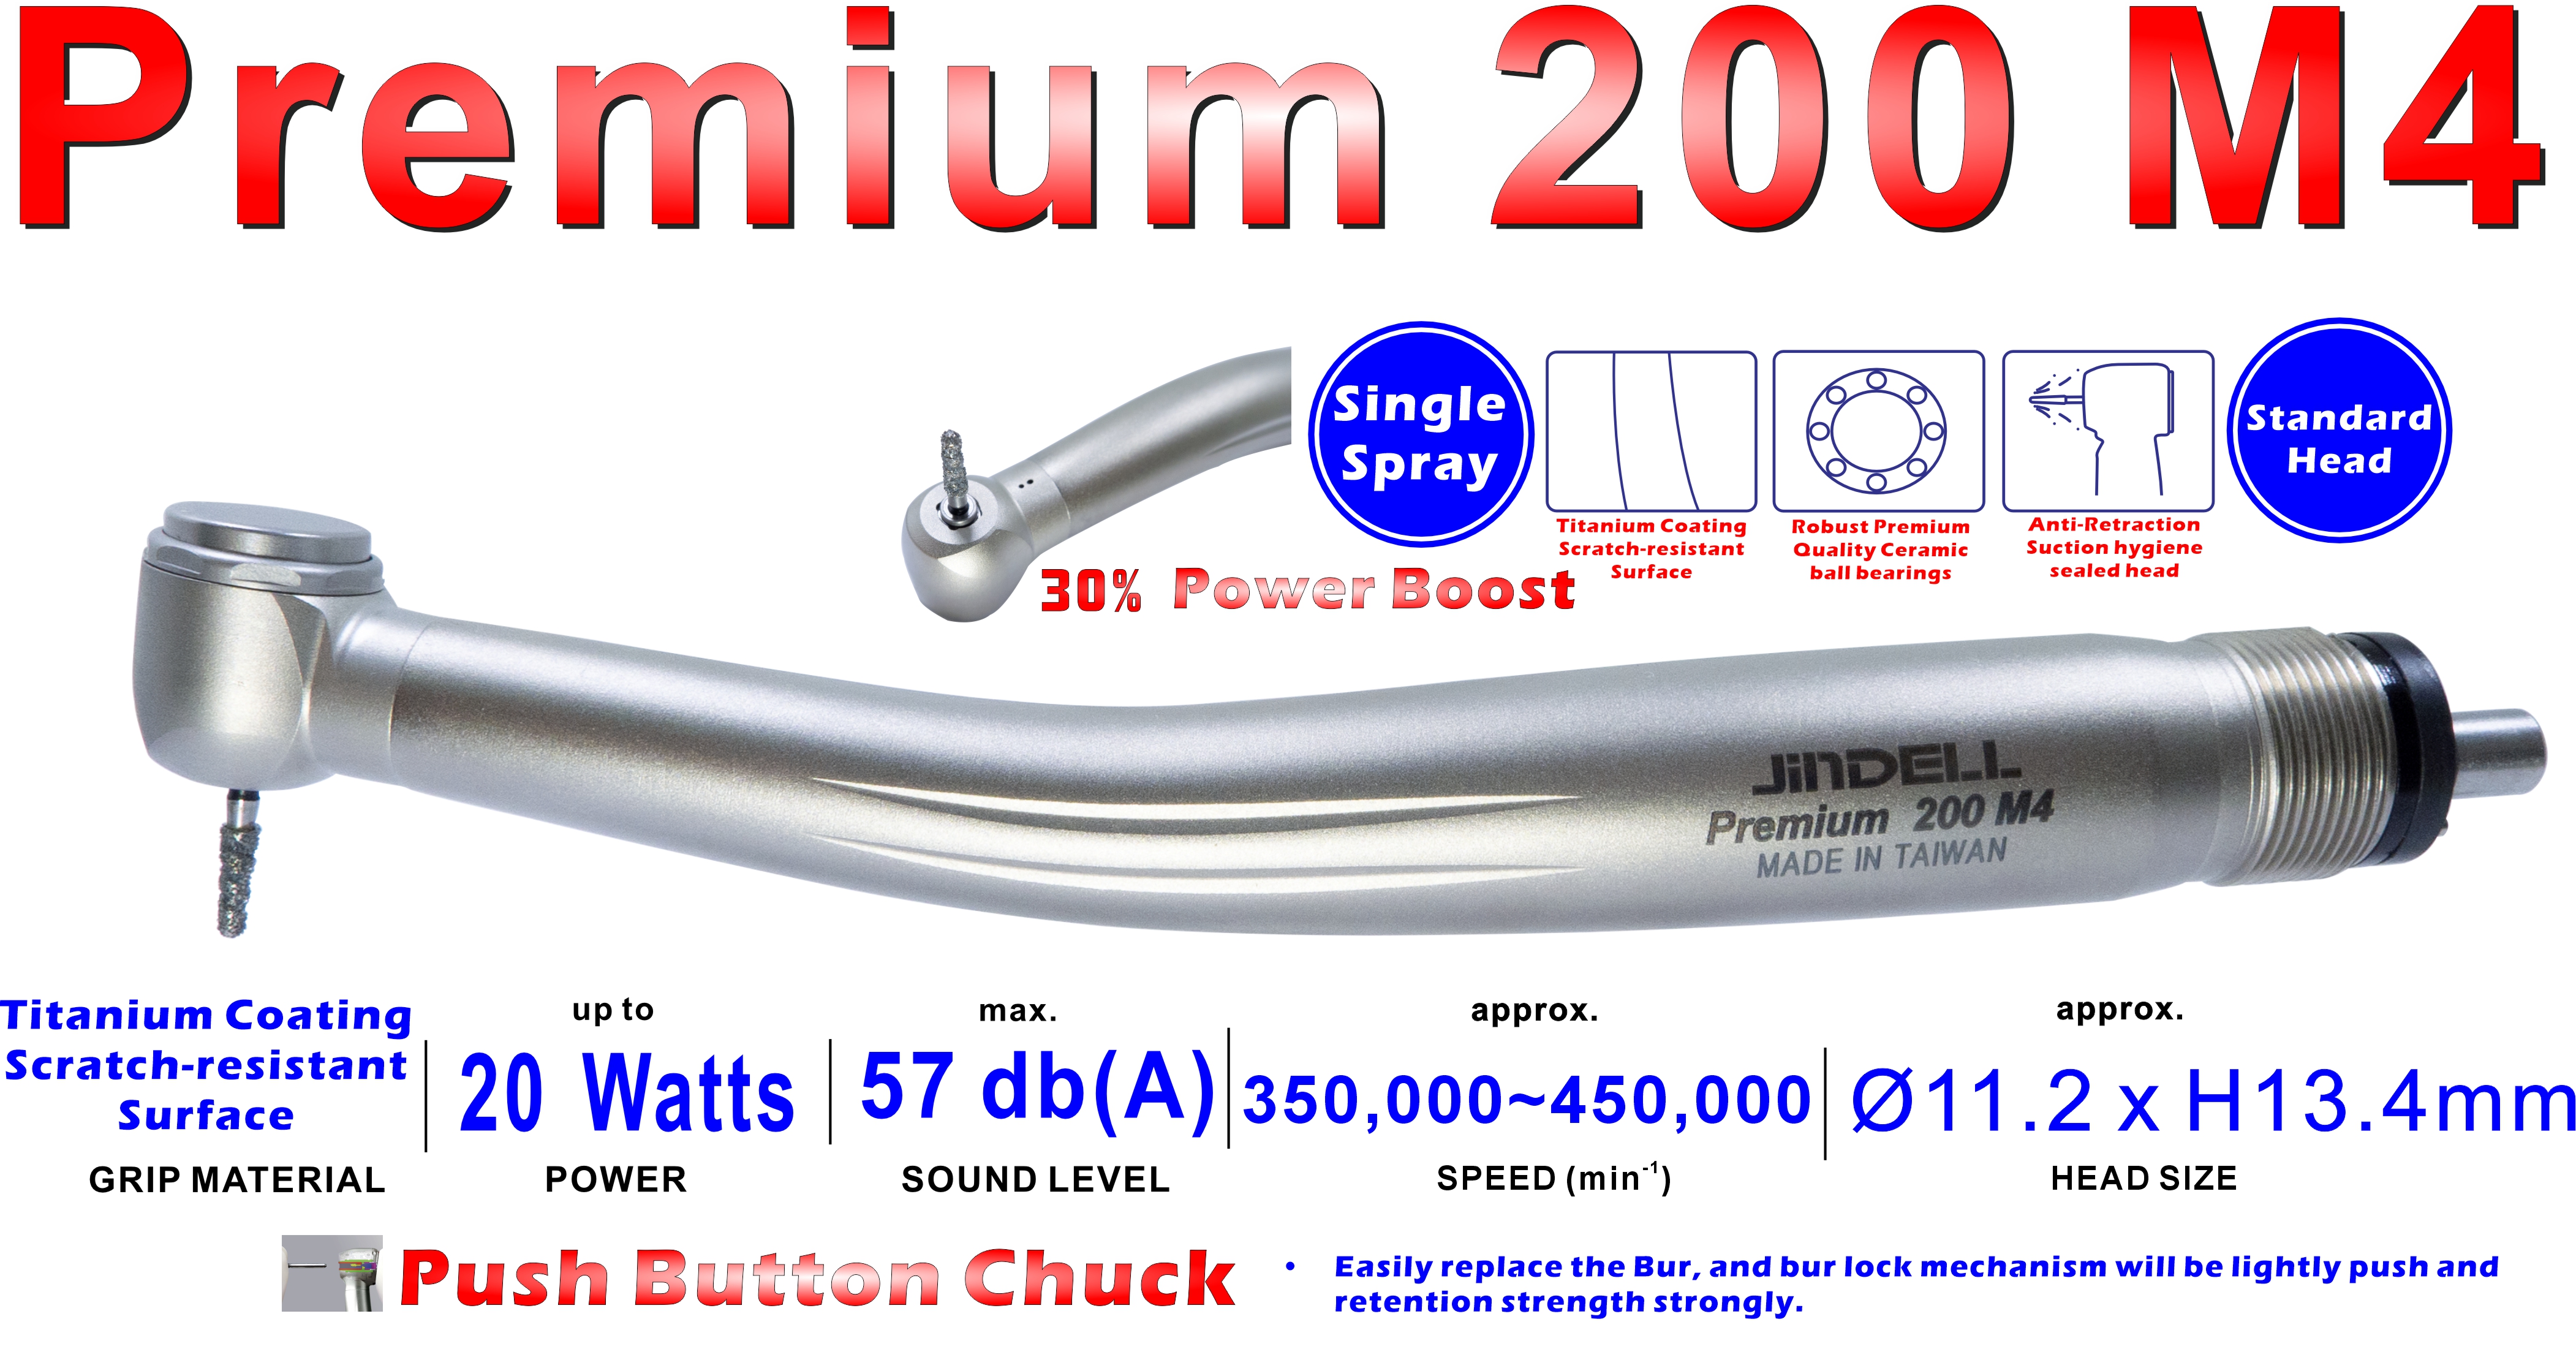 Premium 200 M4